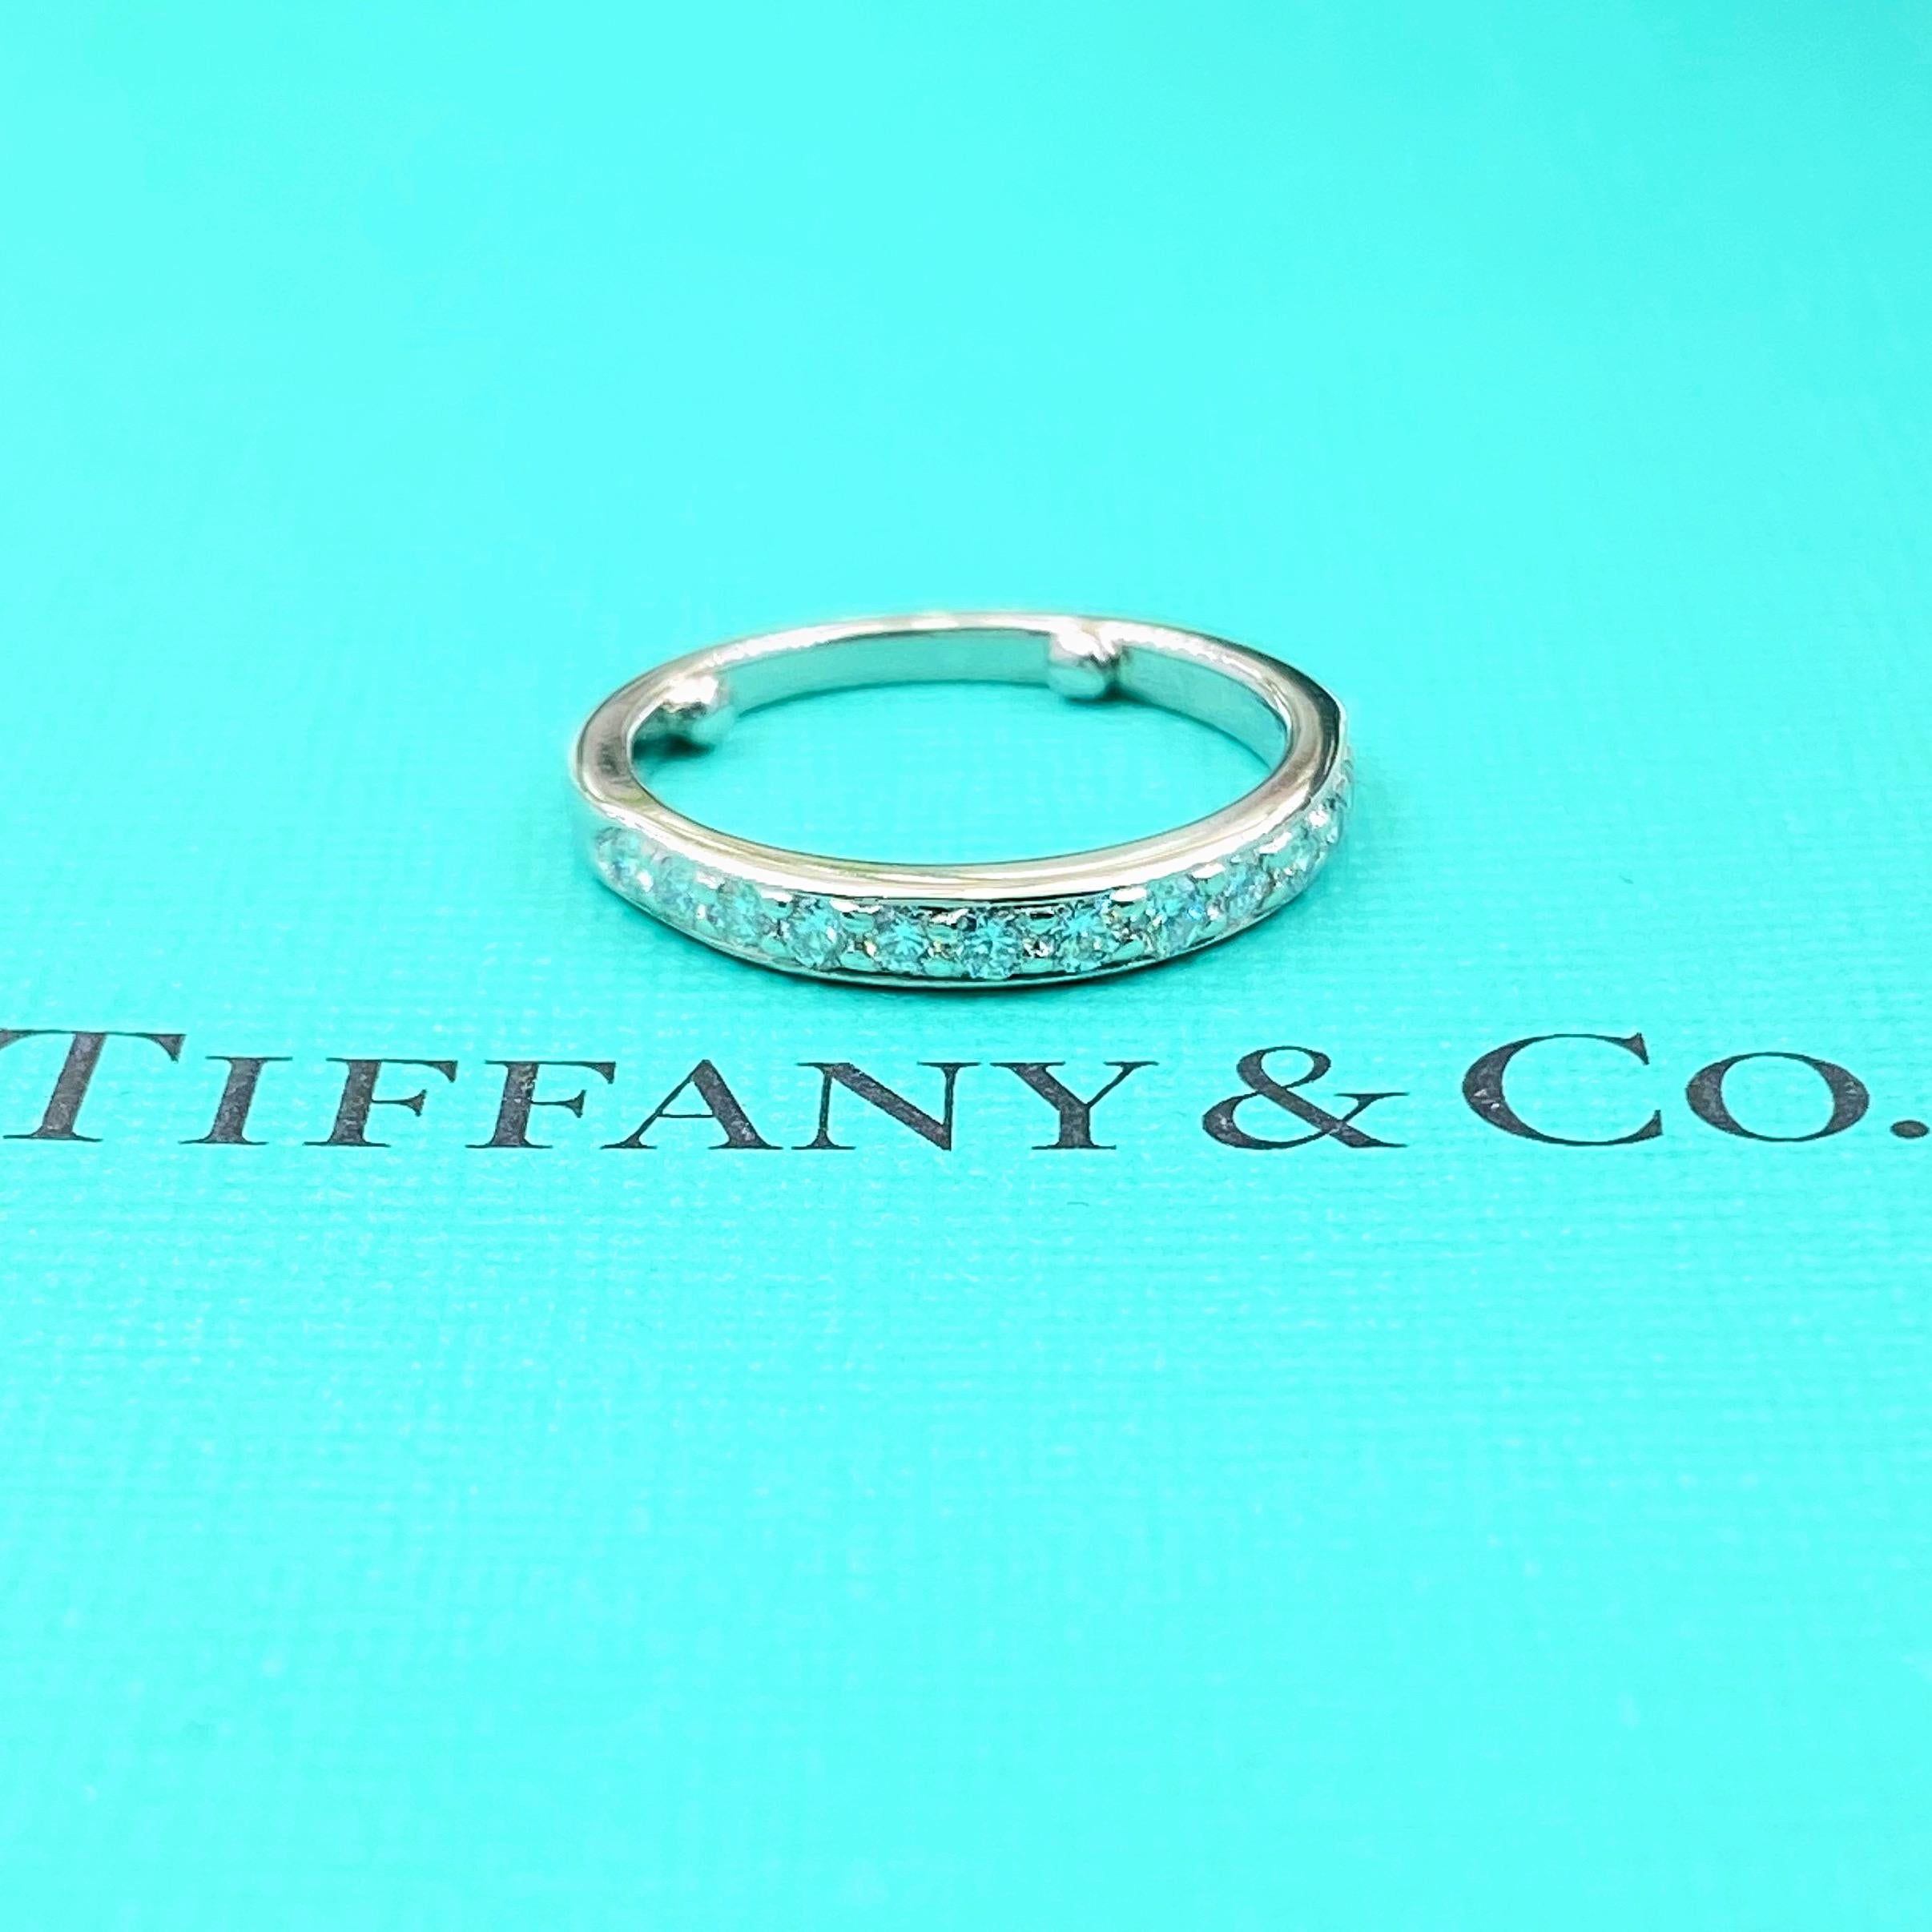 Tiffany & Co. Diamant Ehering Ring
Stil:  Halbkreis-Perlenset 
Metall:  Platin PT950
Größe:  4.5 mit Größenperlen - größenabhängig
Abmessungen:  2.50 MM
TCW:  0.27 tcw
Hauptdiamant:  13 runde Brillantdiamanten
Farbe & Klarheit:  F - G /